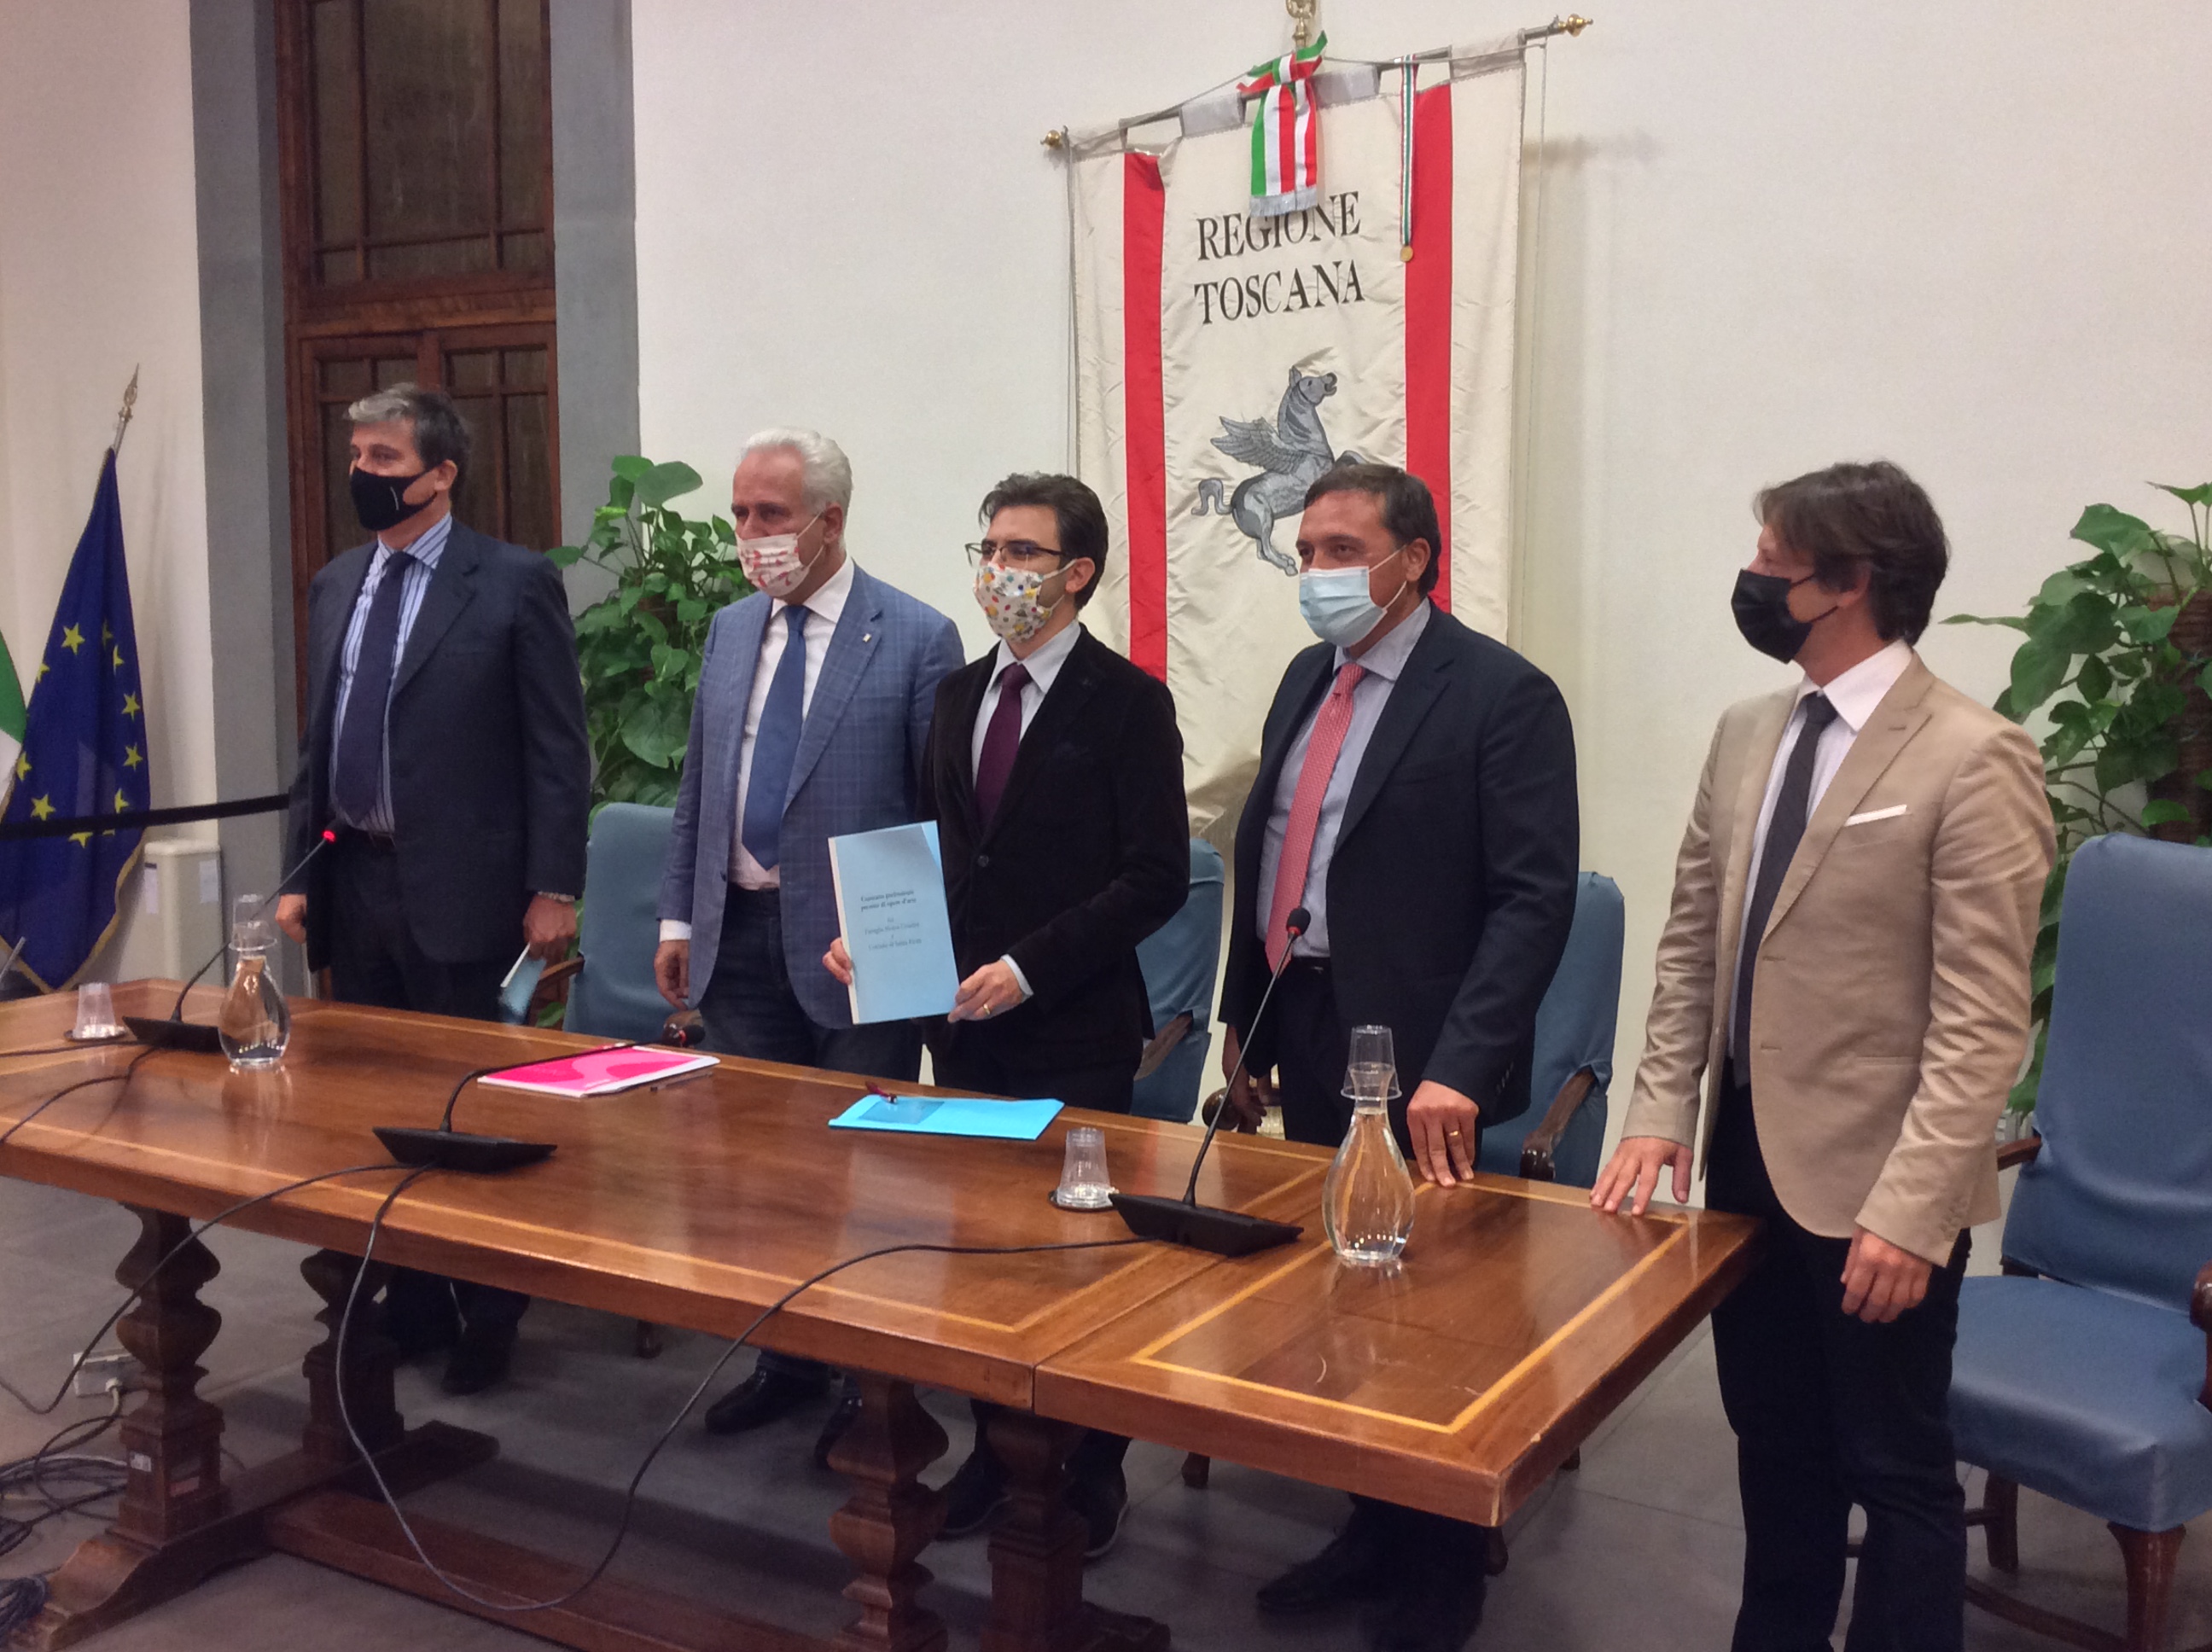 La collezione Sforza Cesarini in prestito a Santa Fiora: in Regione la firma dell'accordo